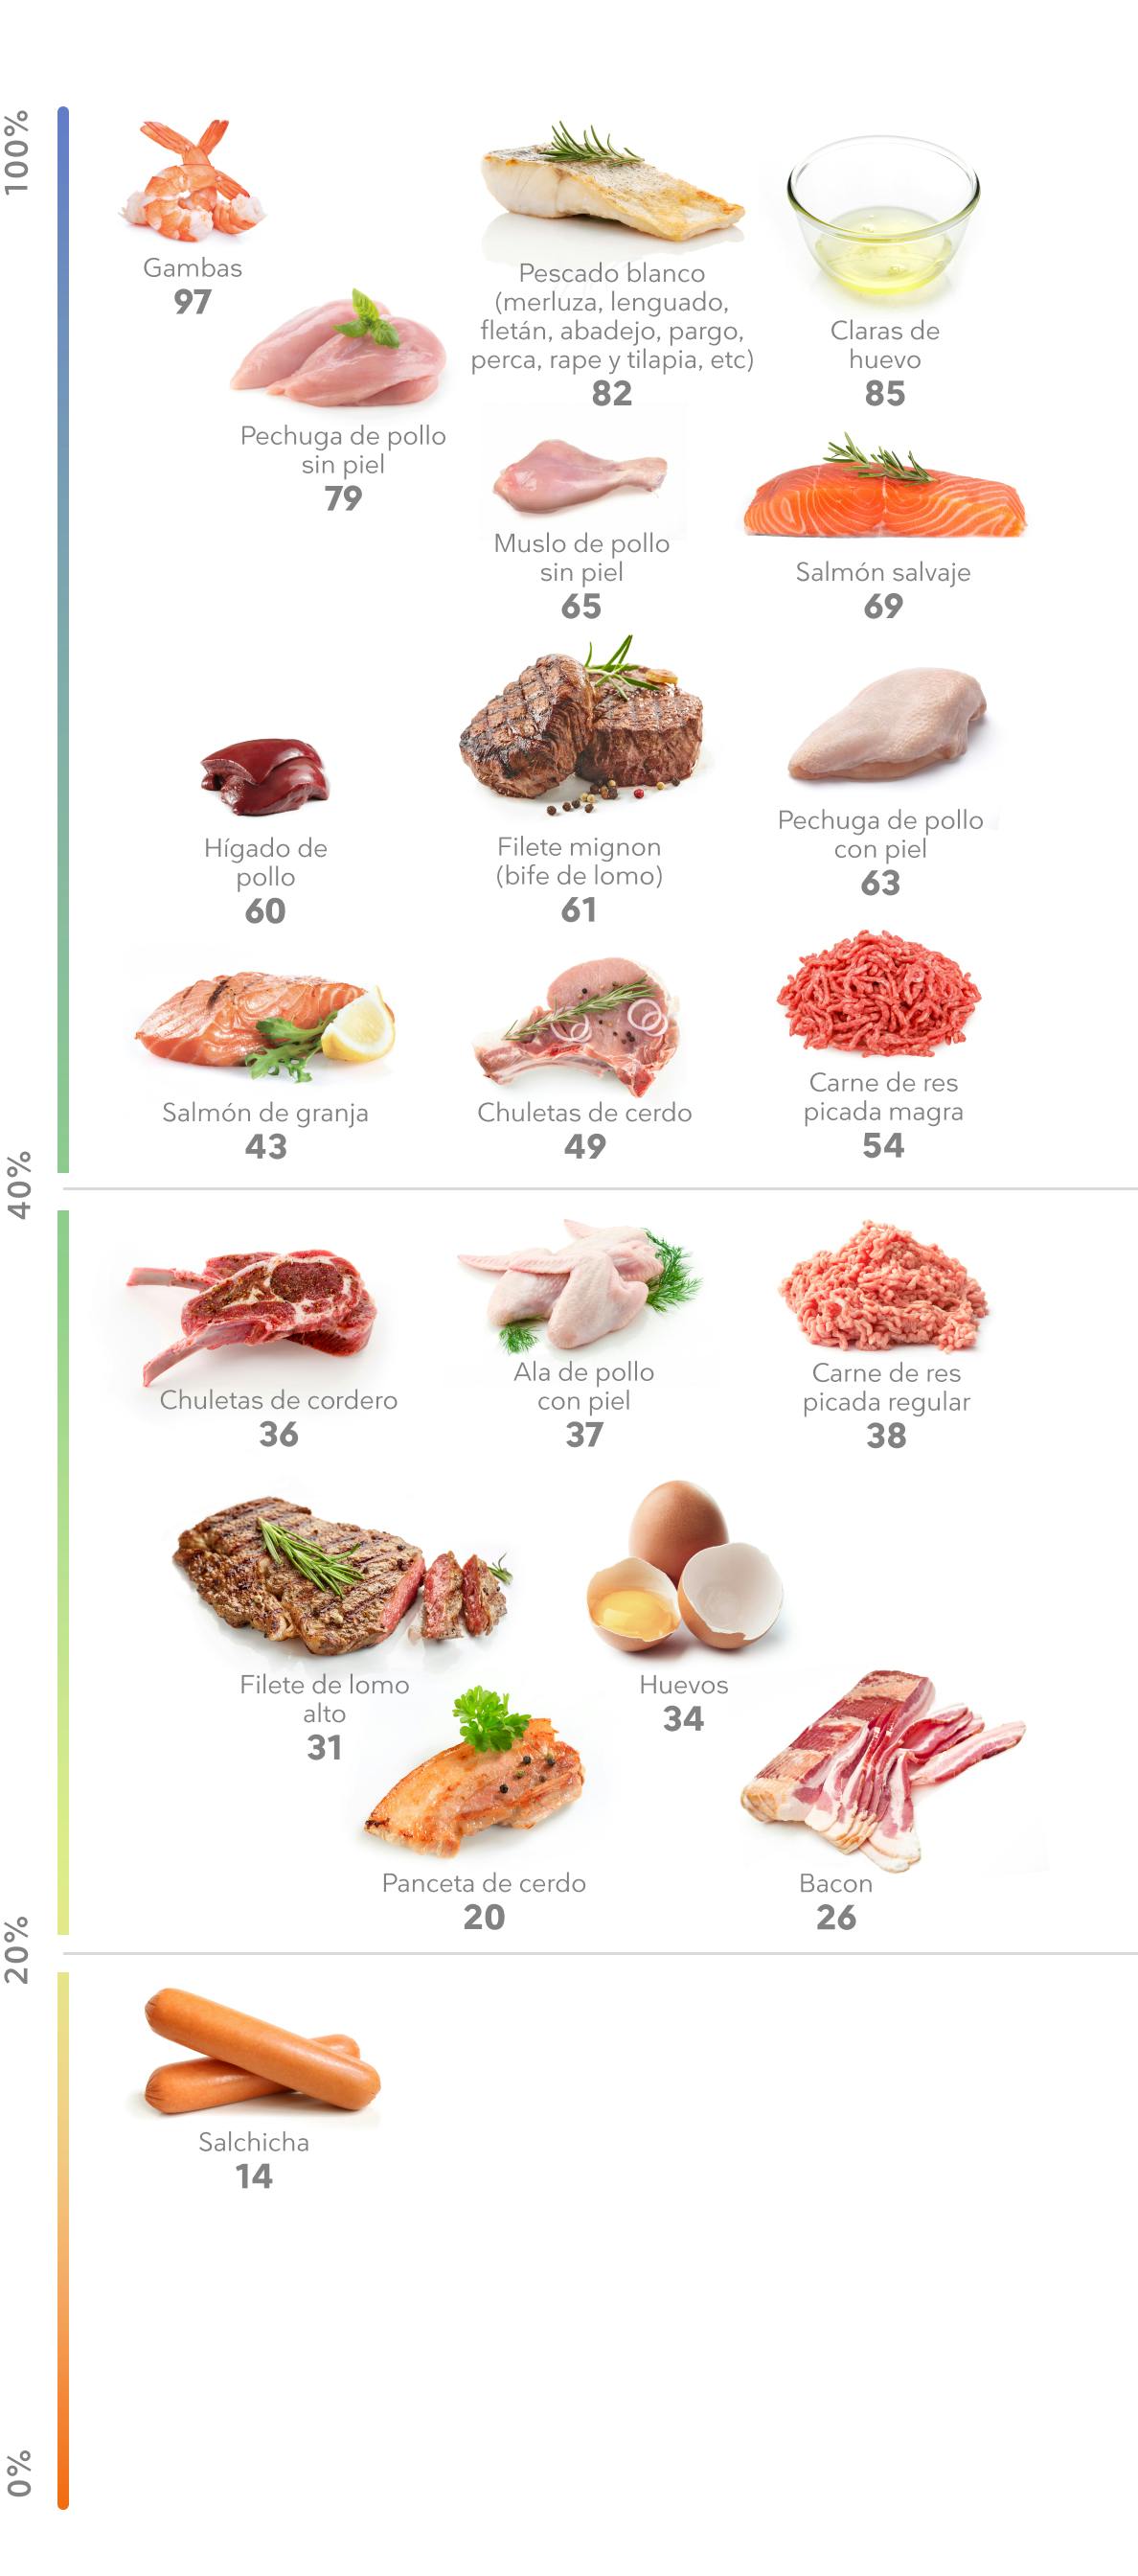 tipos de carnes